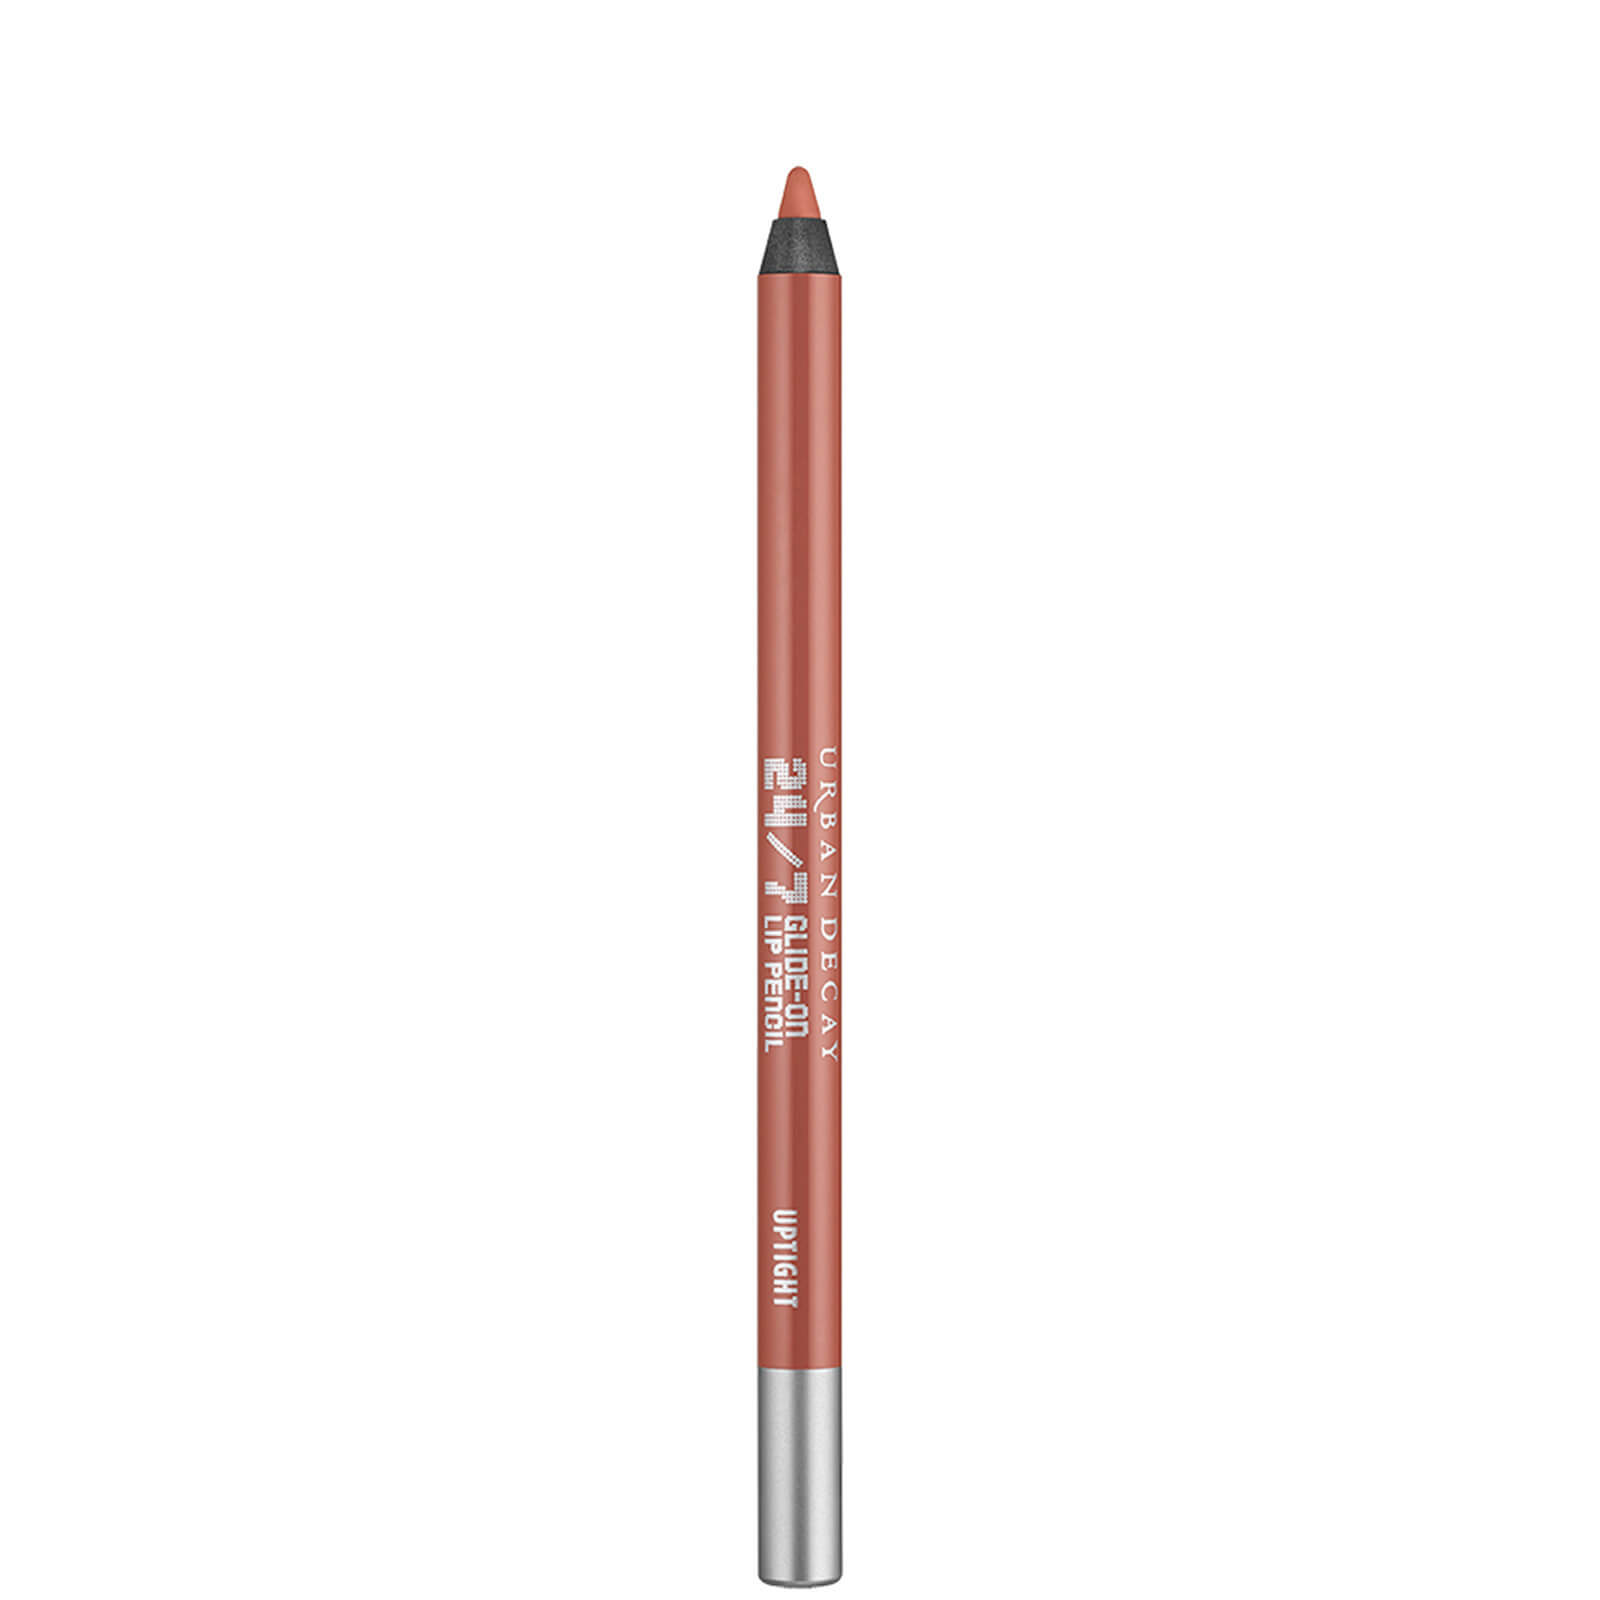 Urban Decay 24/7 Lip Pencil (Various Shades) - Uptight